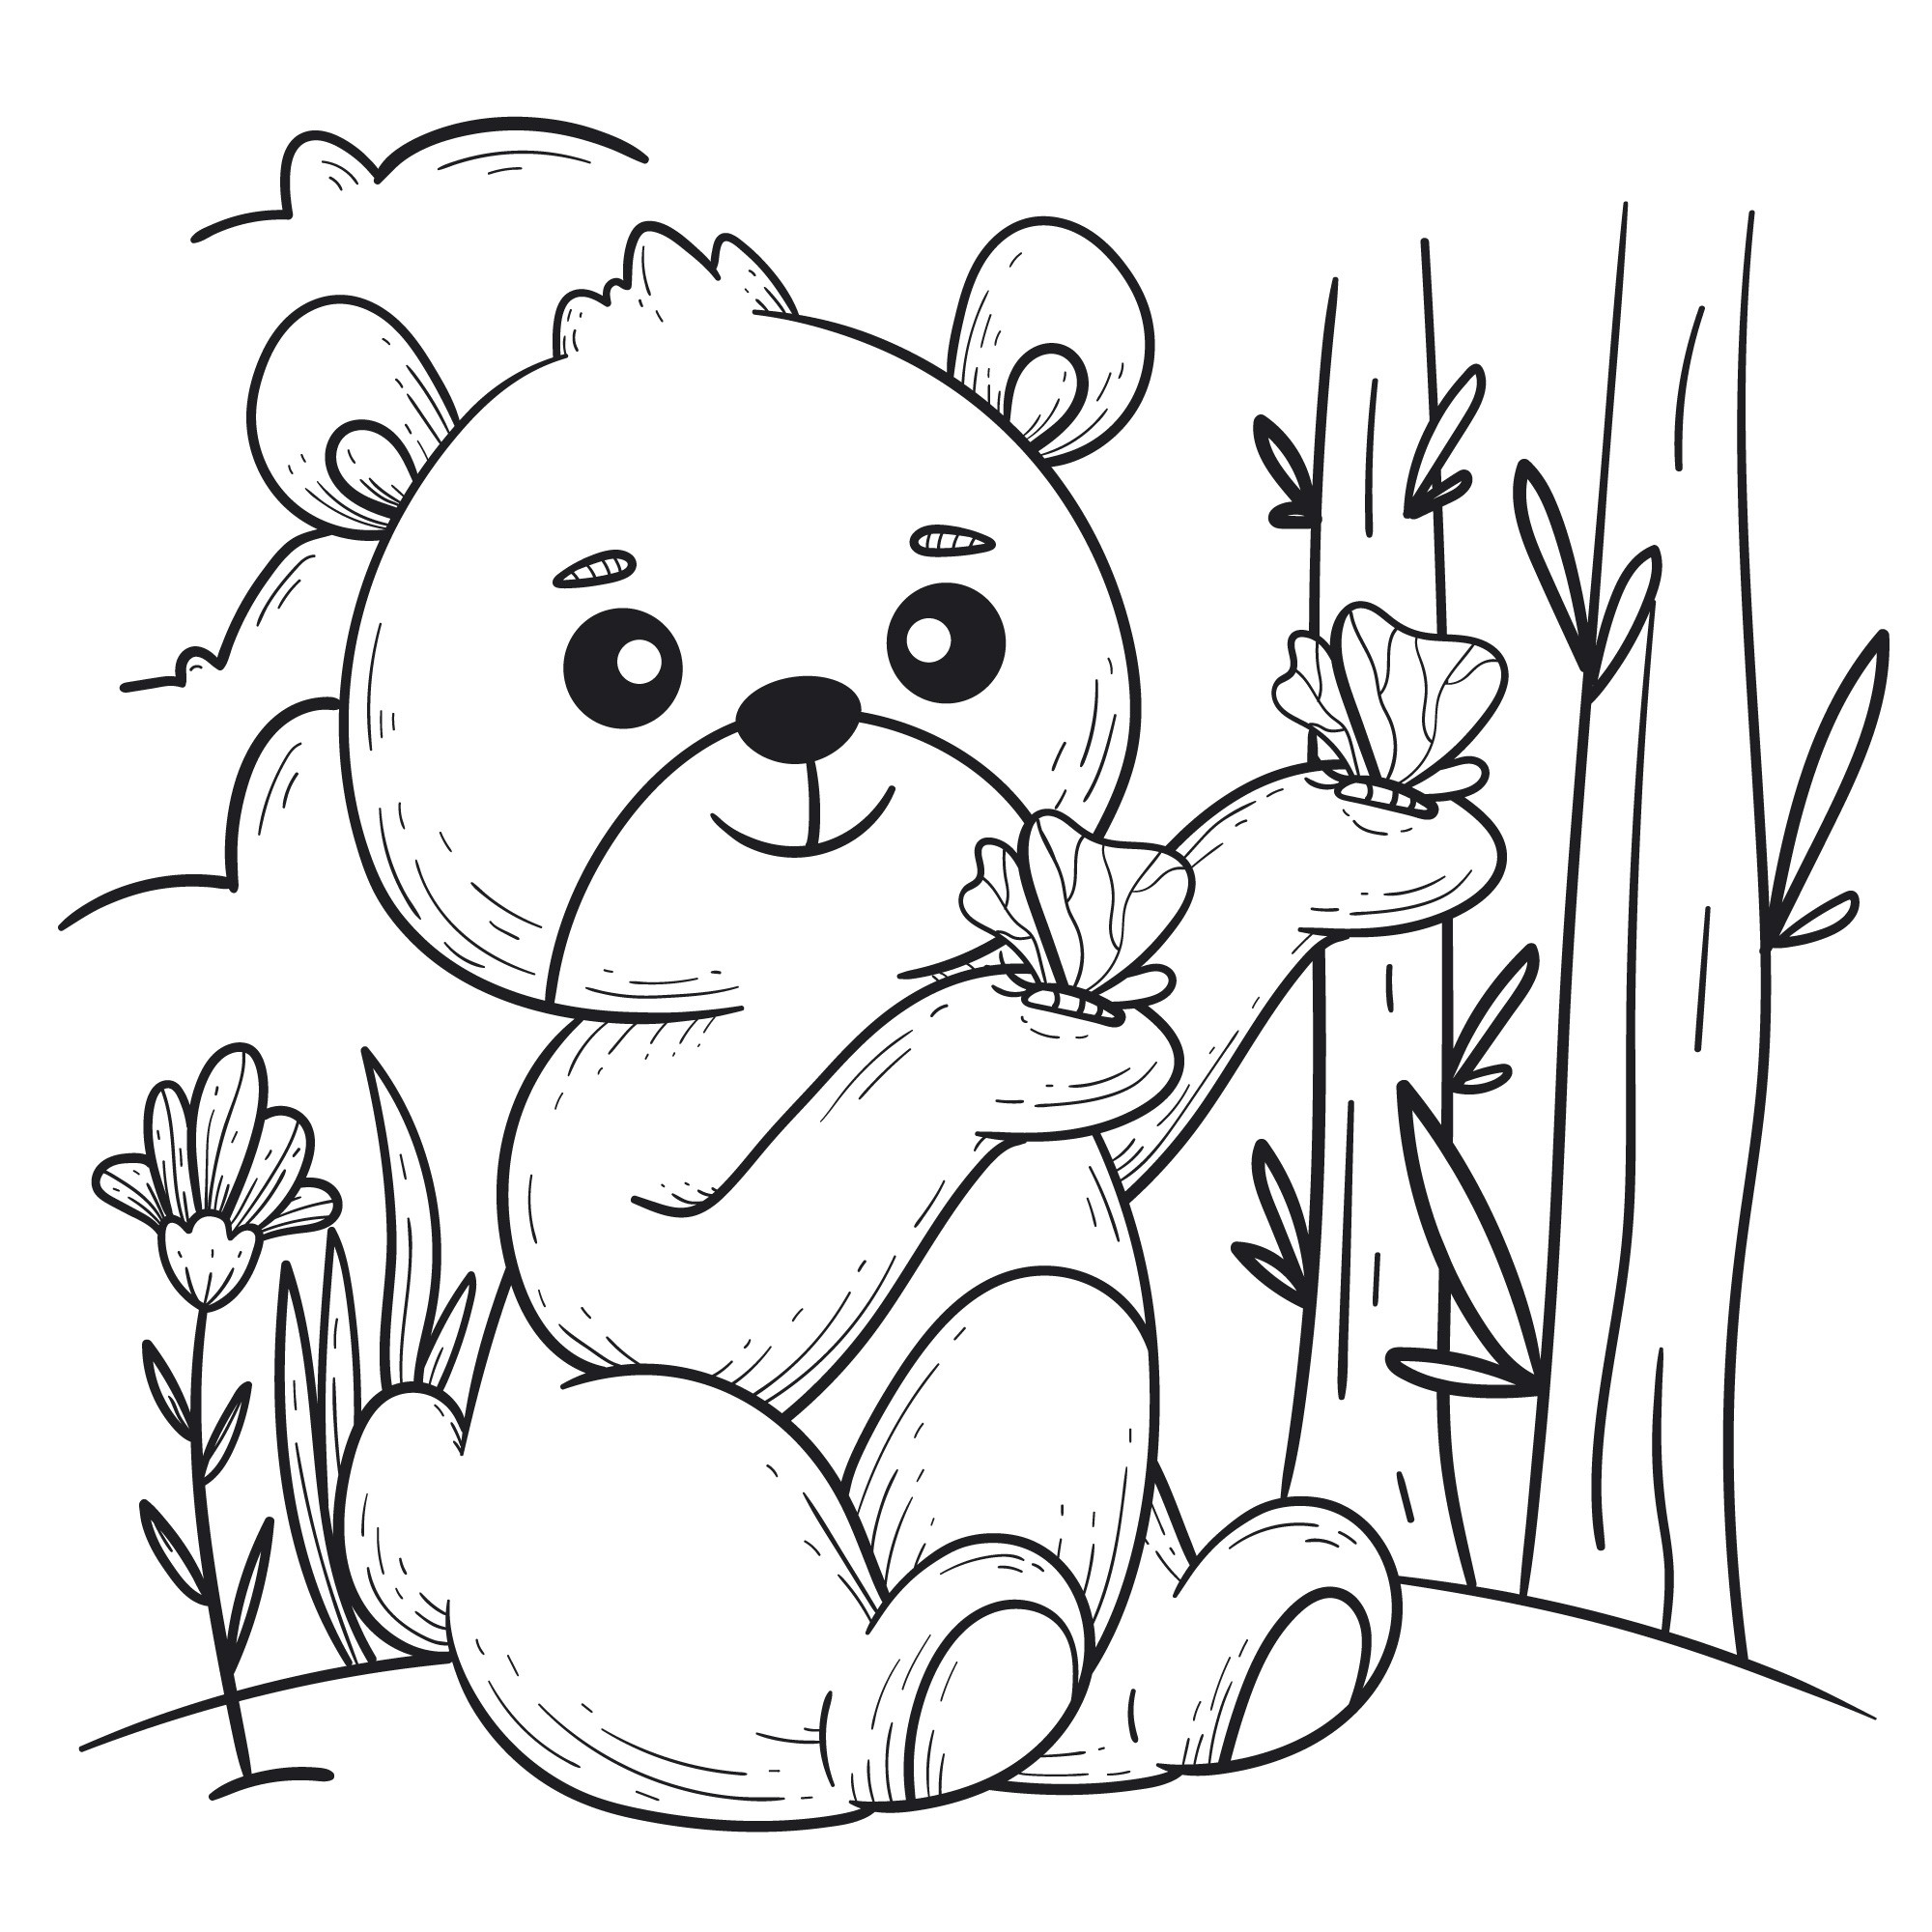 Раскраска для детей: медведь сидит на лужайке с бабочками